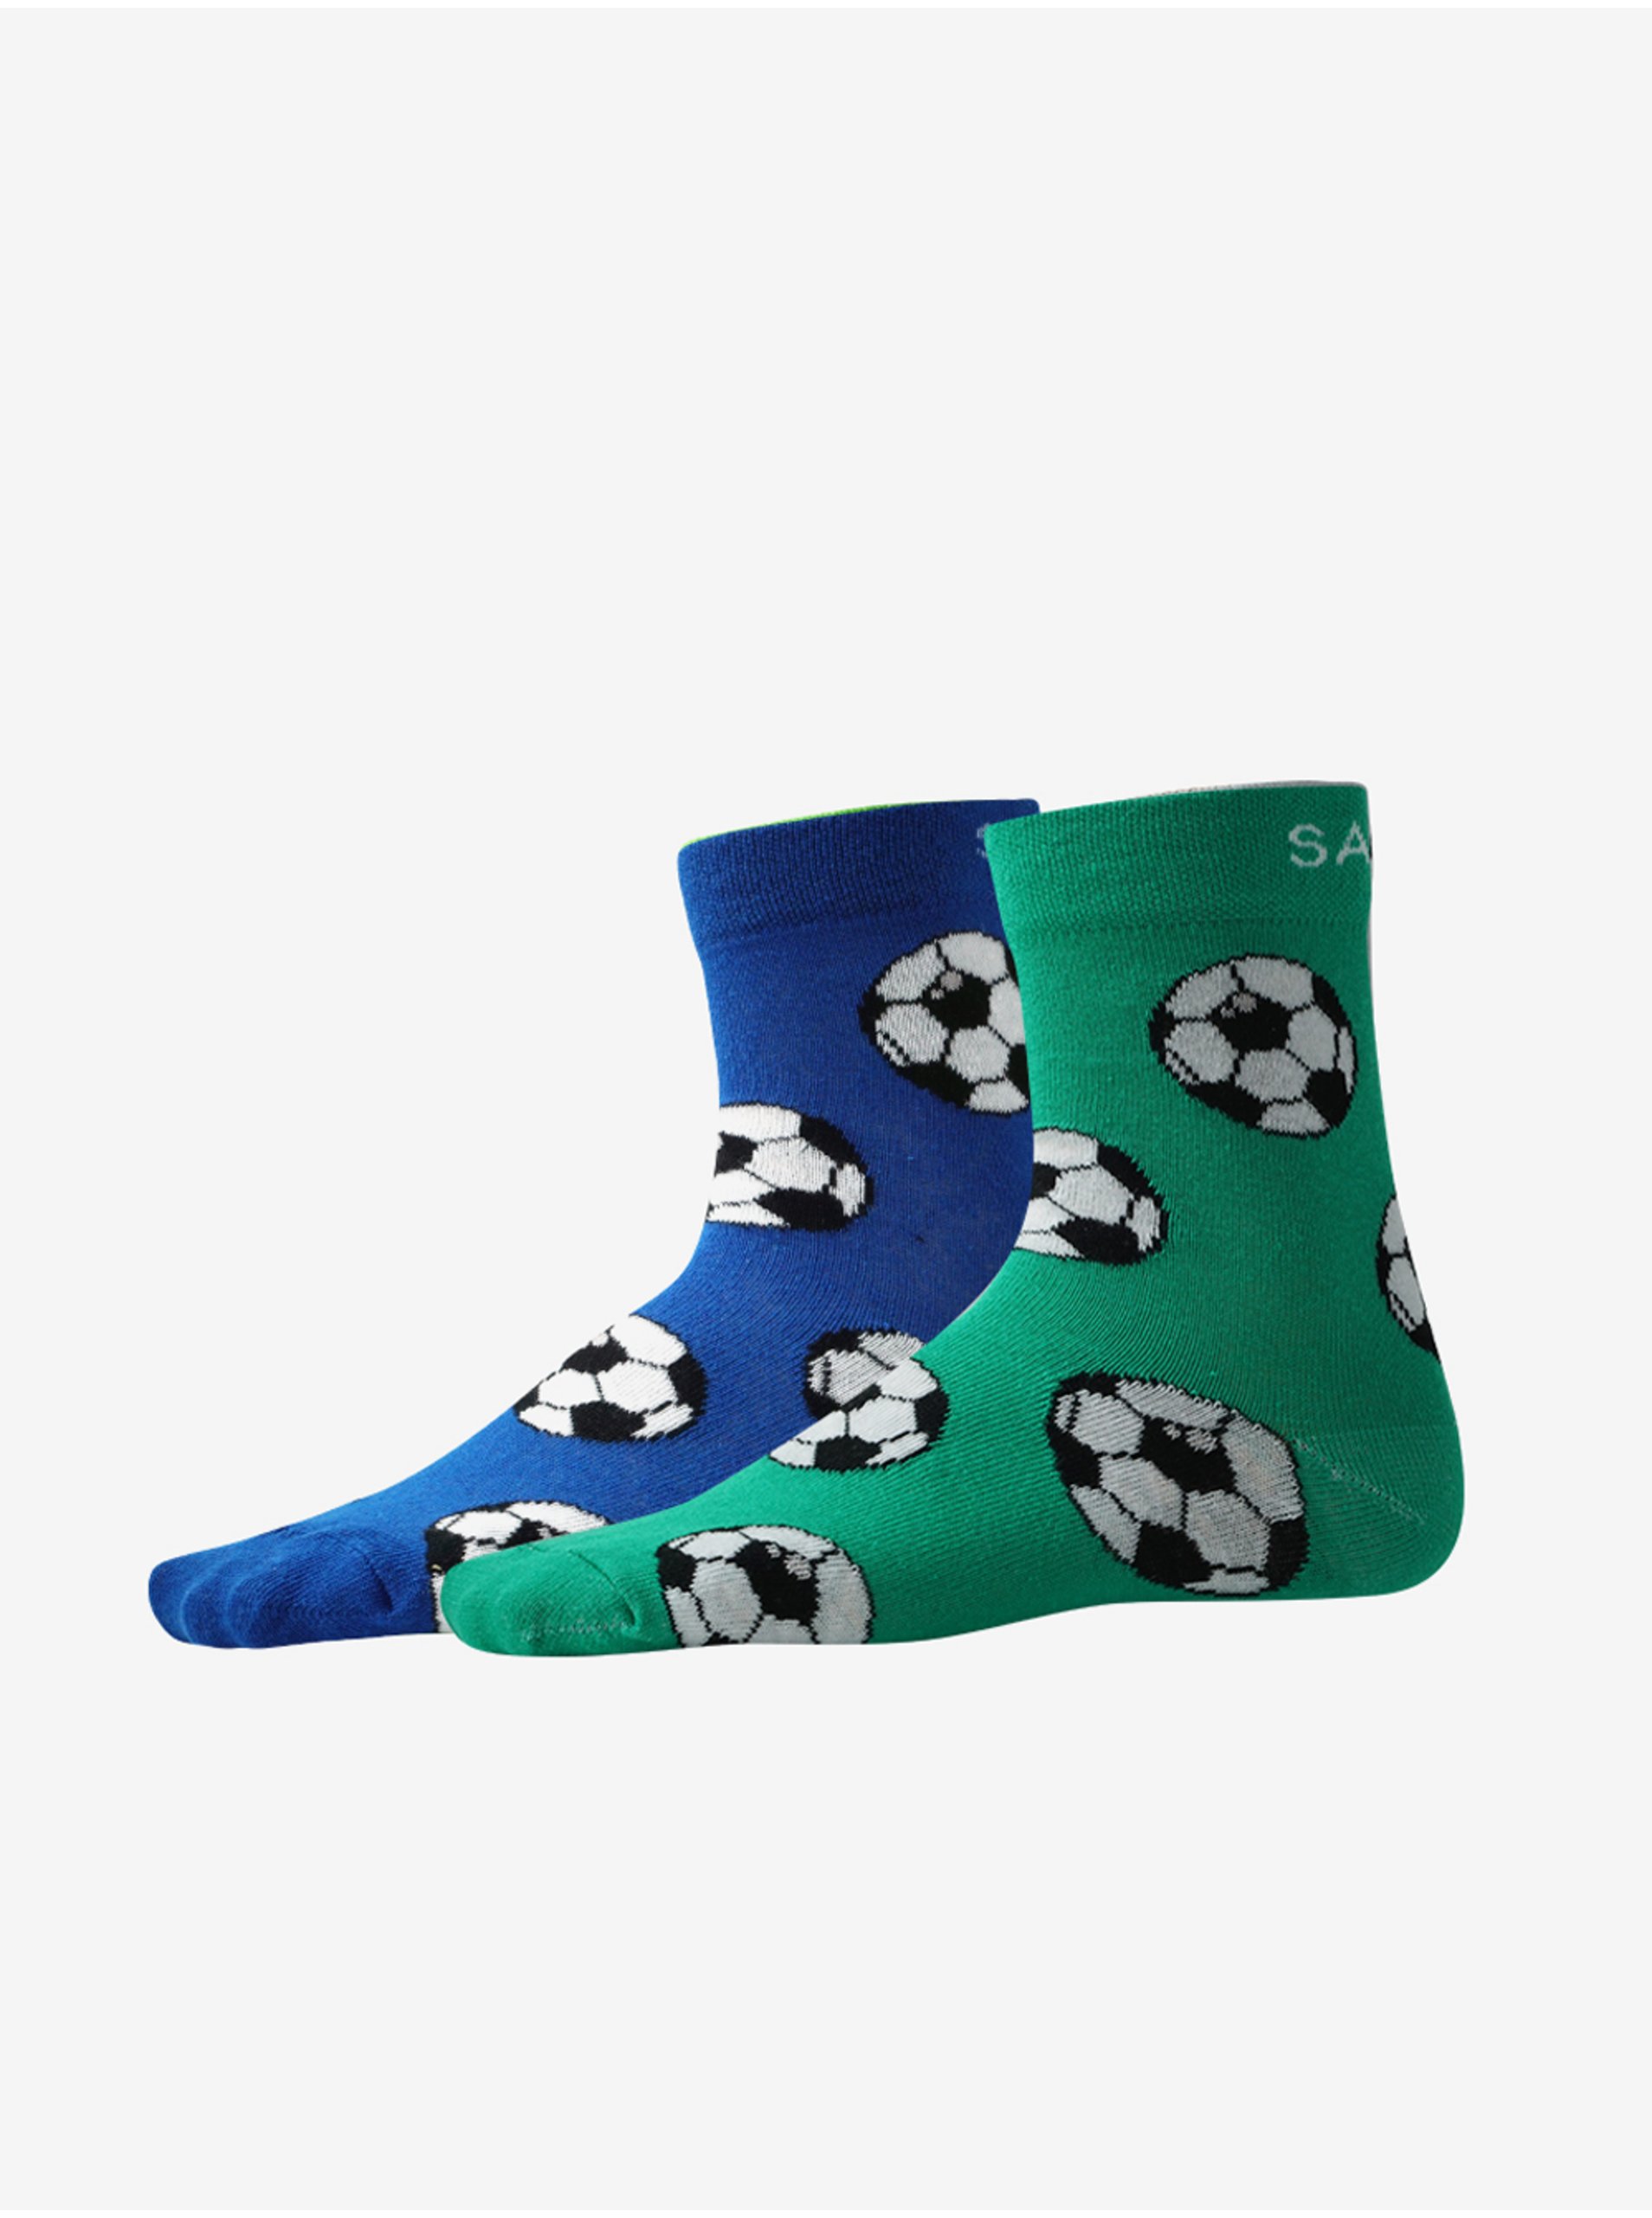 E-shop Sada dvoch párov vzorovaných ponožiek v modrej a zelenej farbe SAM 73 Unupo